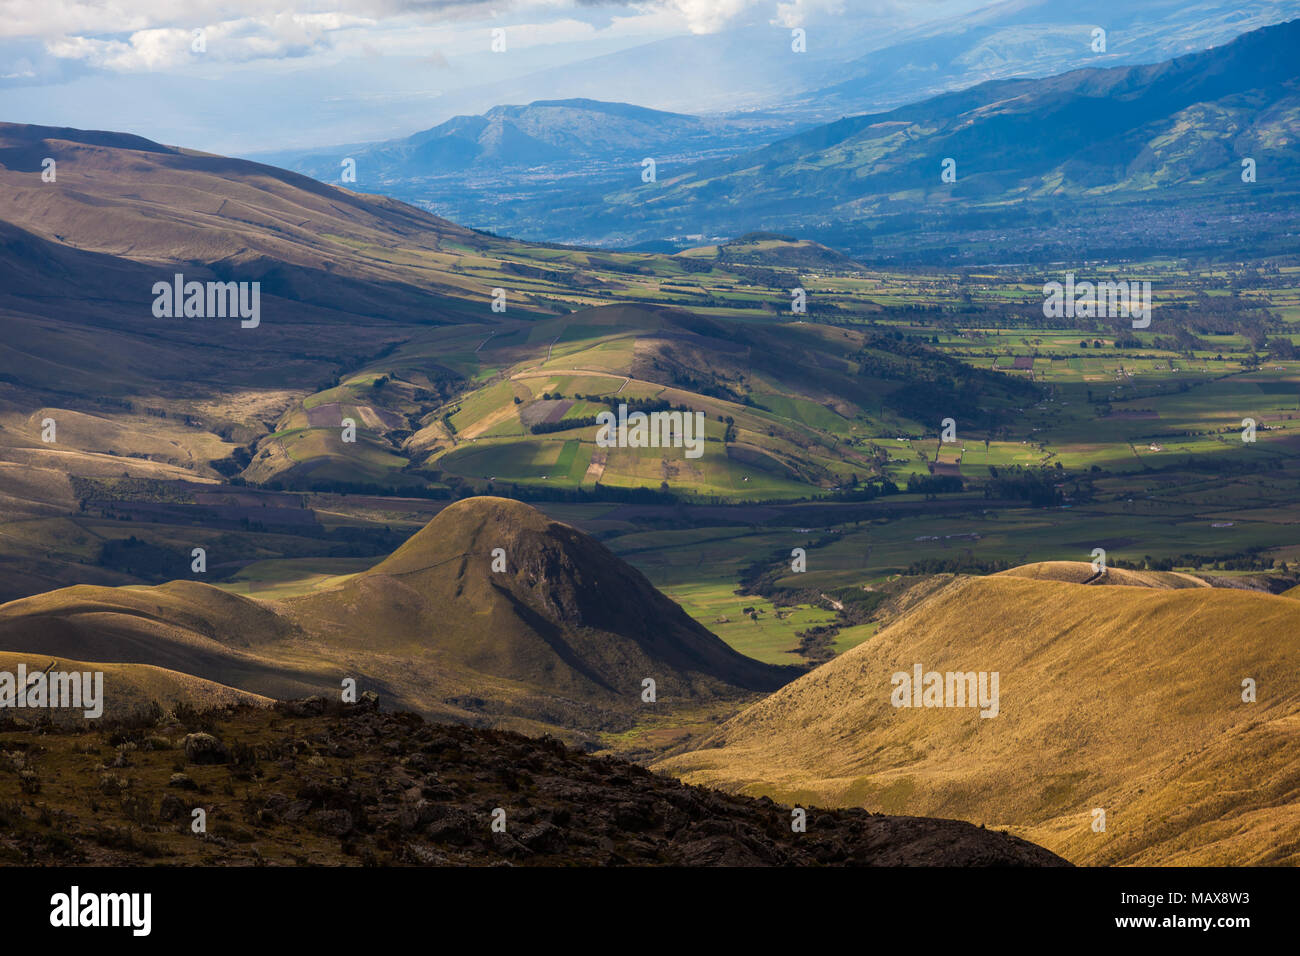 Der ecuadorianischen Anden Landschaft, wo Sie das Relief sehen können, die Felder und die Berge in Hell-Dunkel-Kontraste Stockfoto